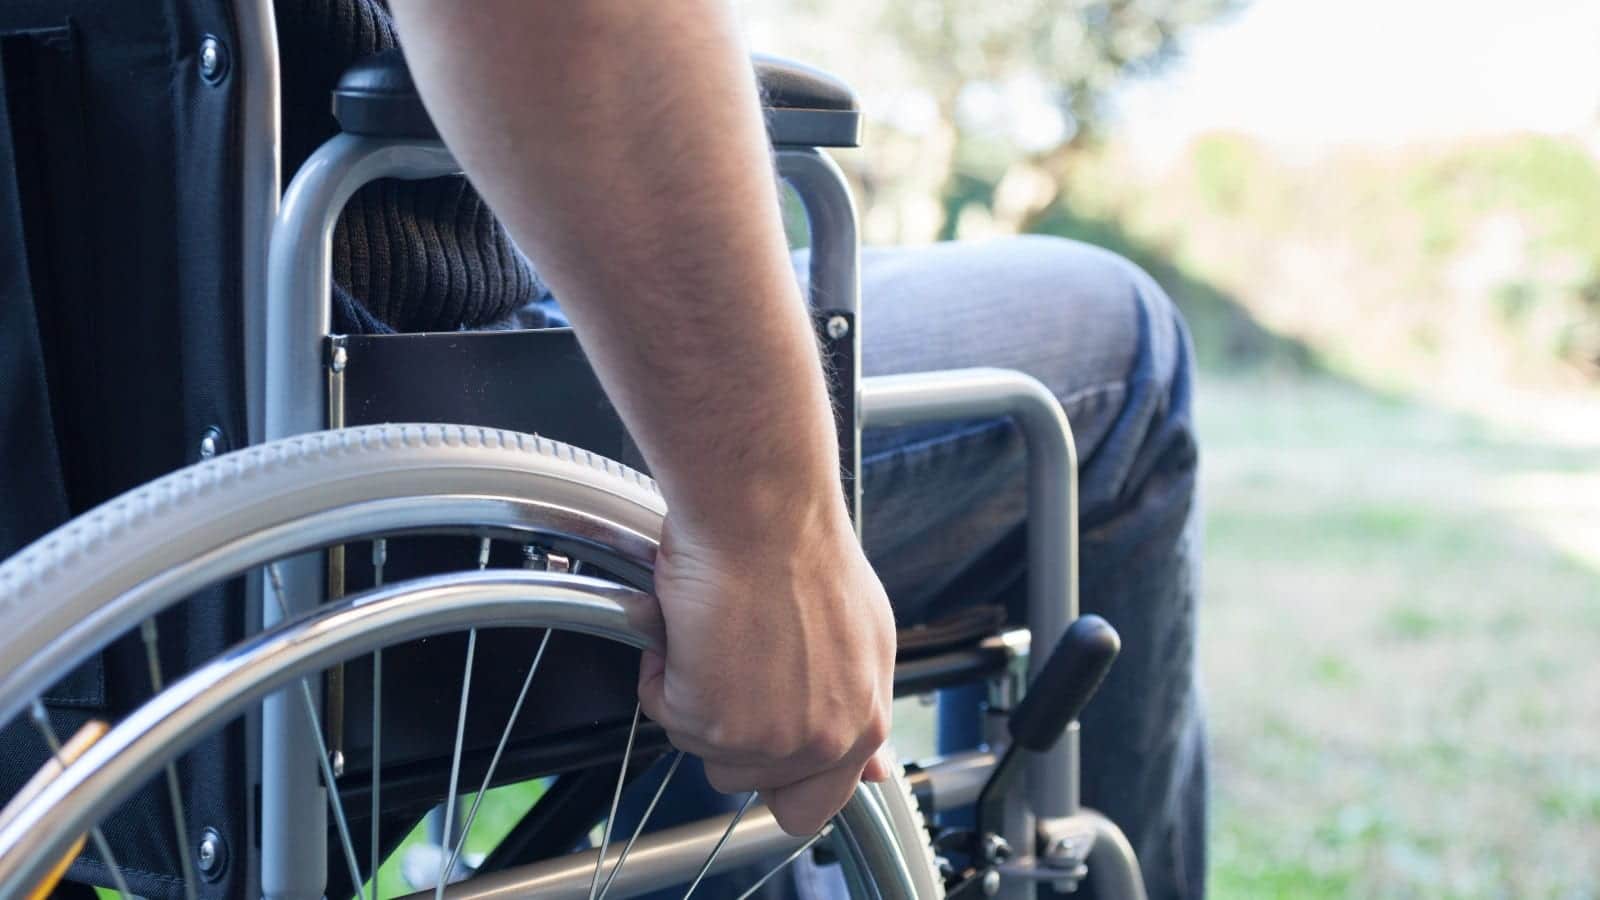 Man using his wheelchair